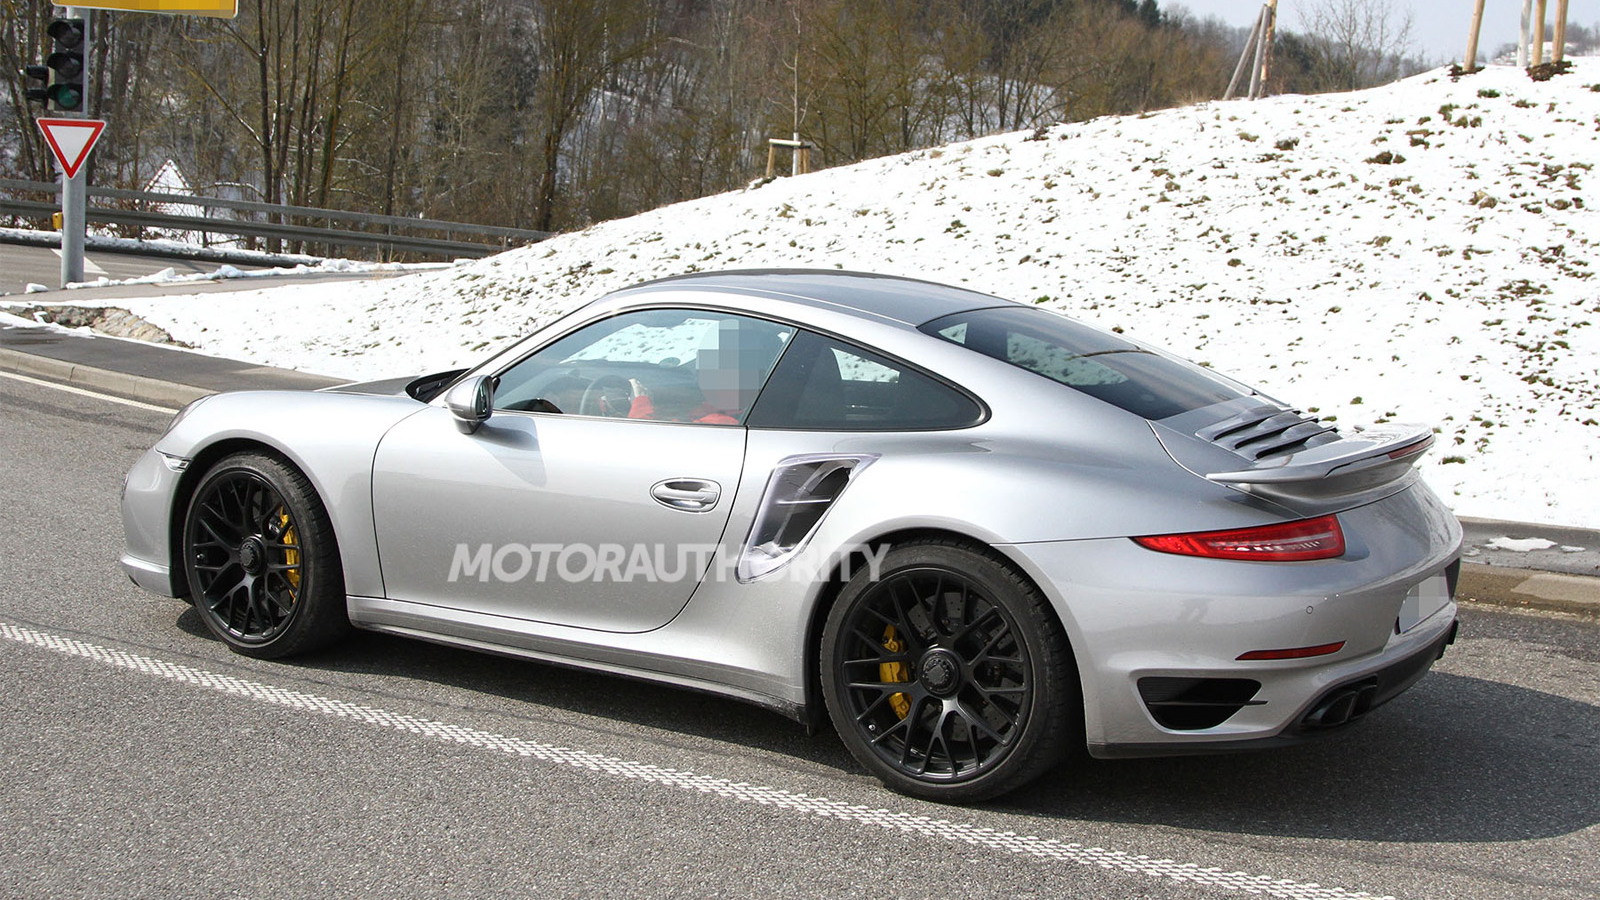 2014 Porsche 911 Turbo spy shots